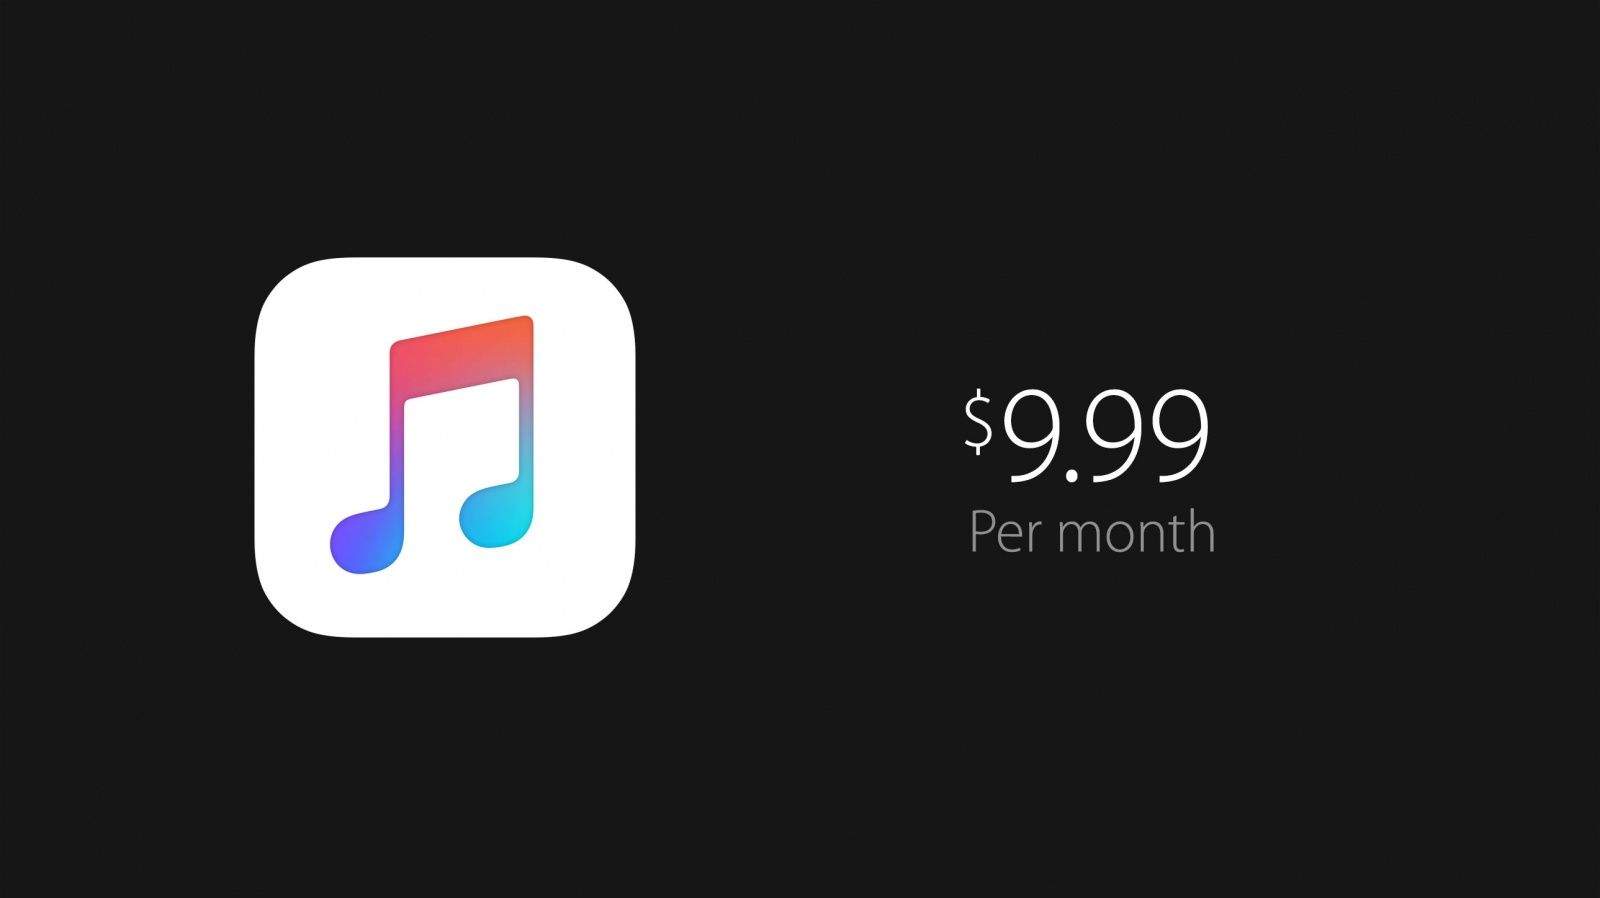 كل ماتريد أن تعرفه عن خدمة Apple Music .. المنافس القادم بقوة